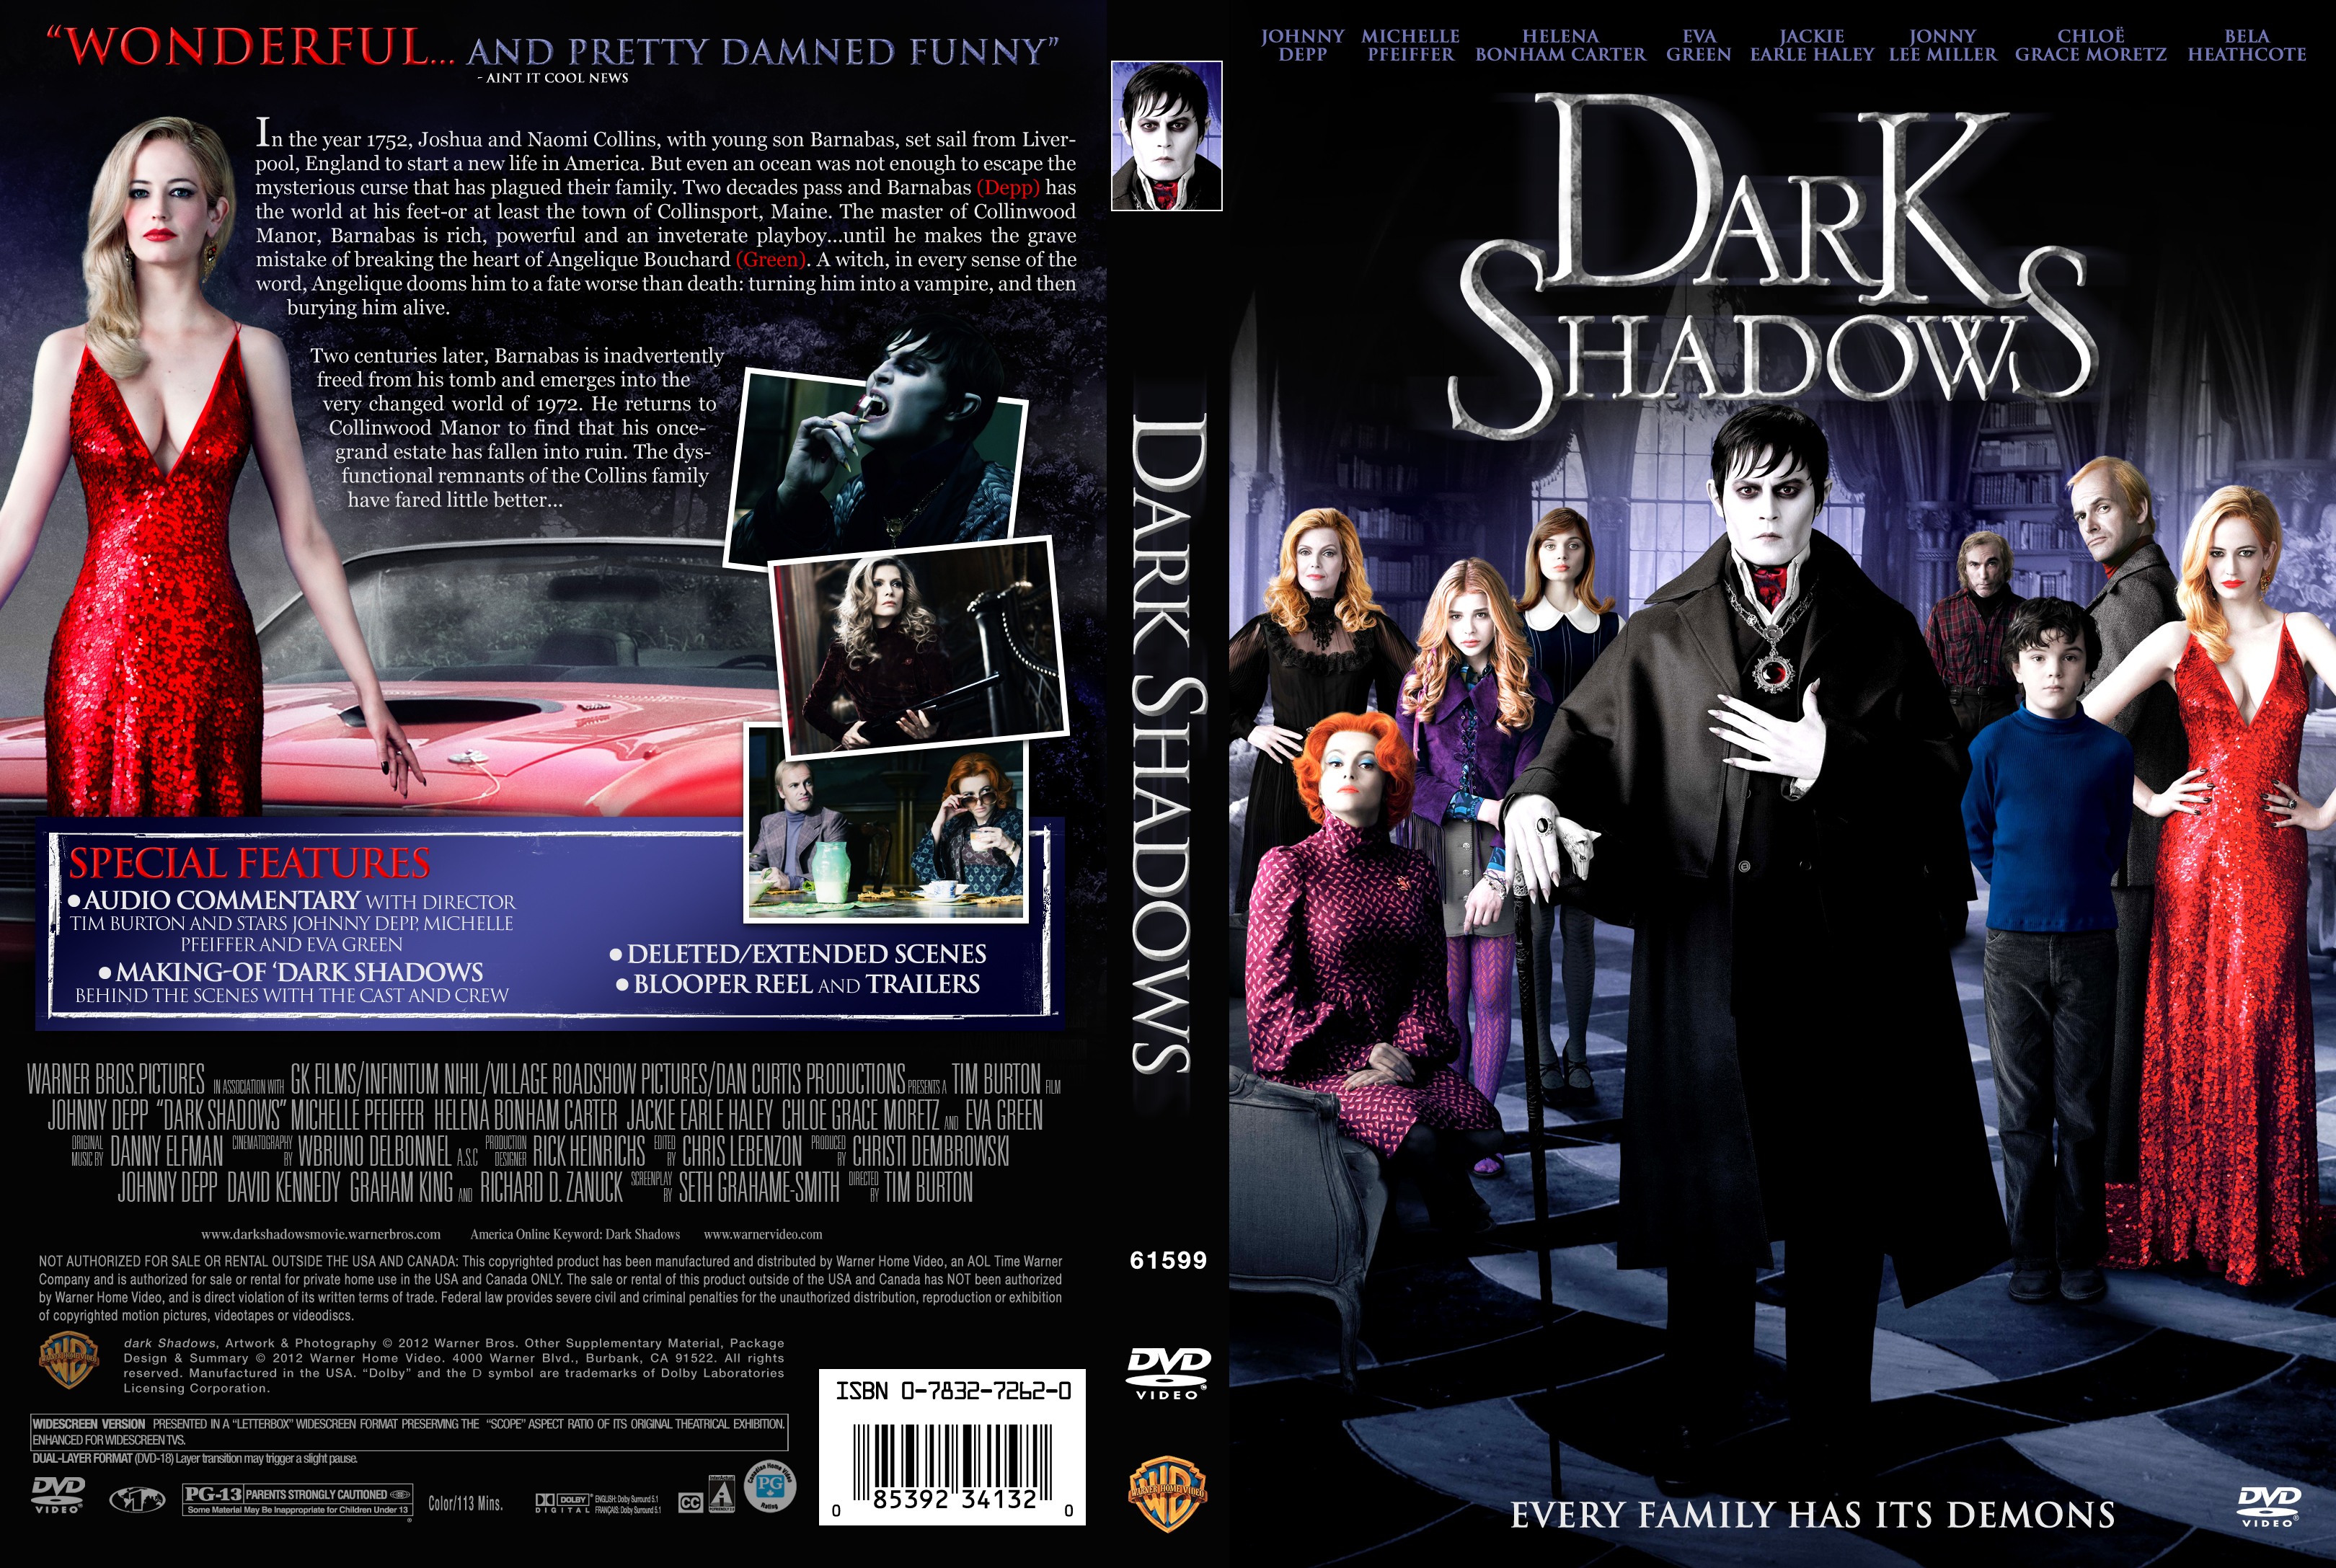 Dark shadows download torrent ita dvdrip quality